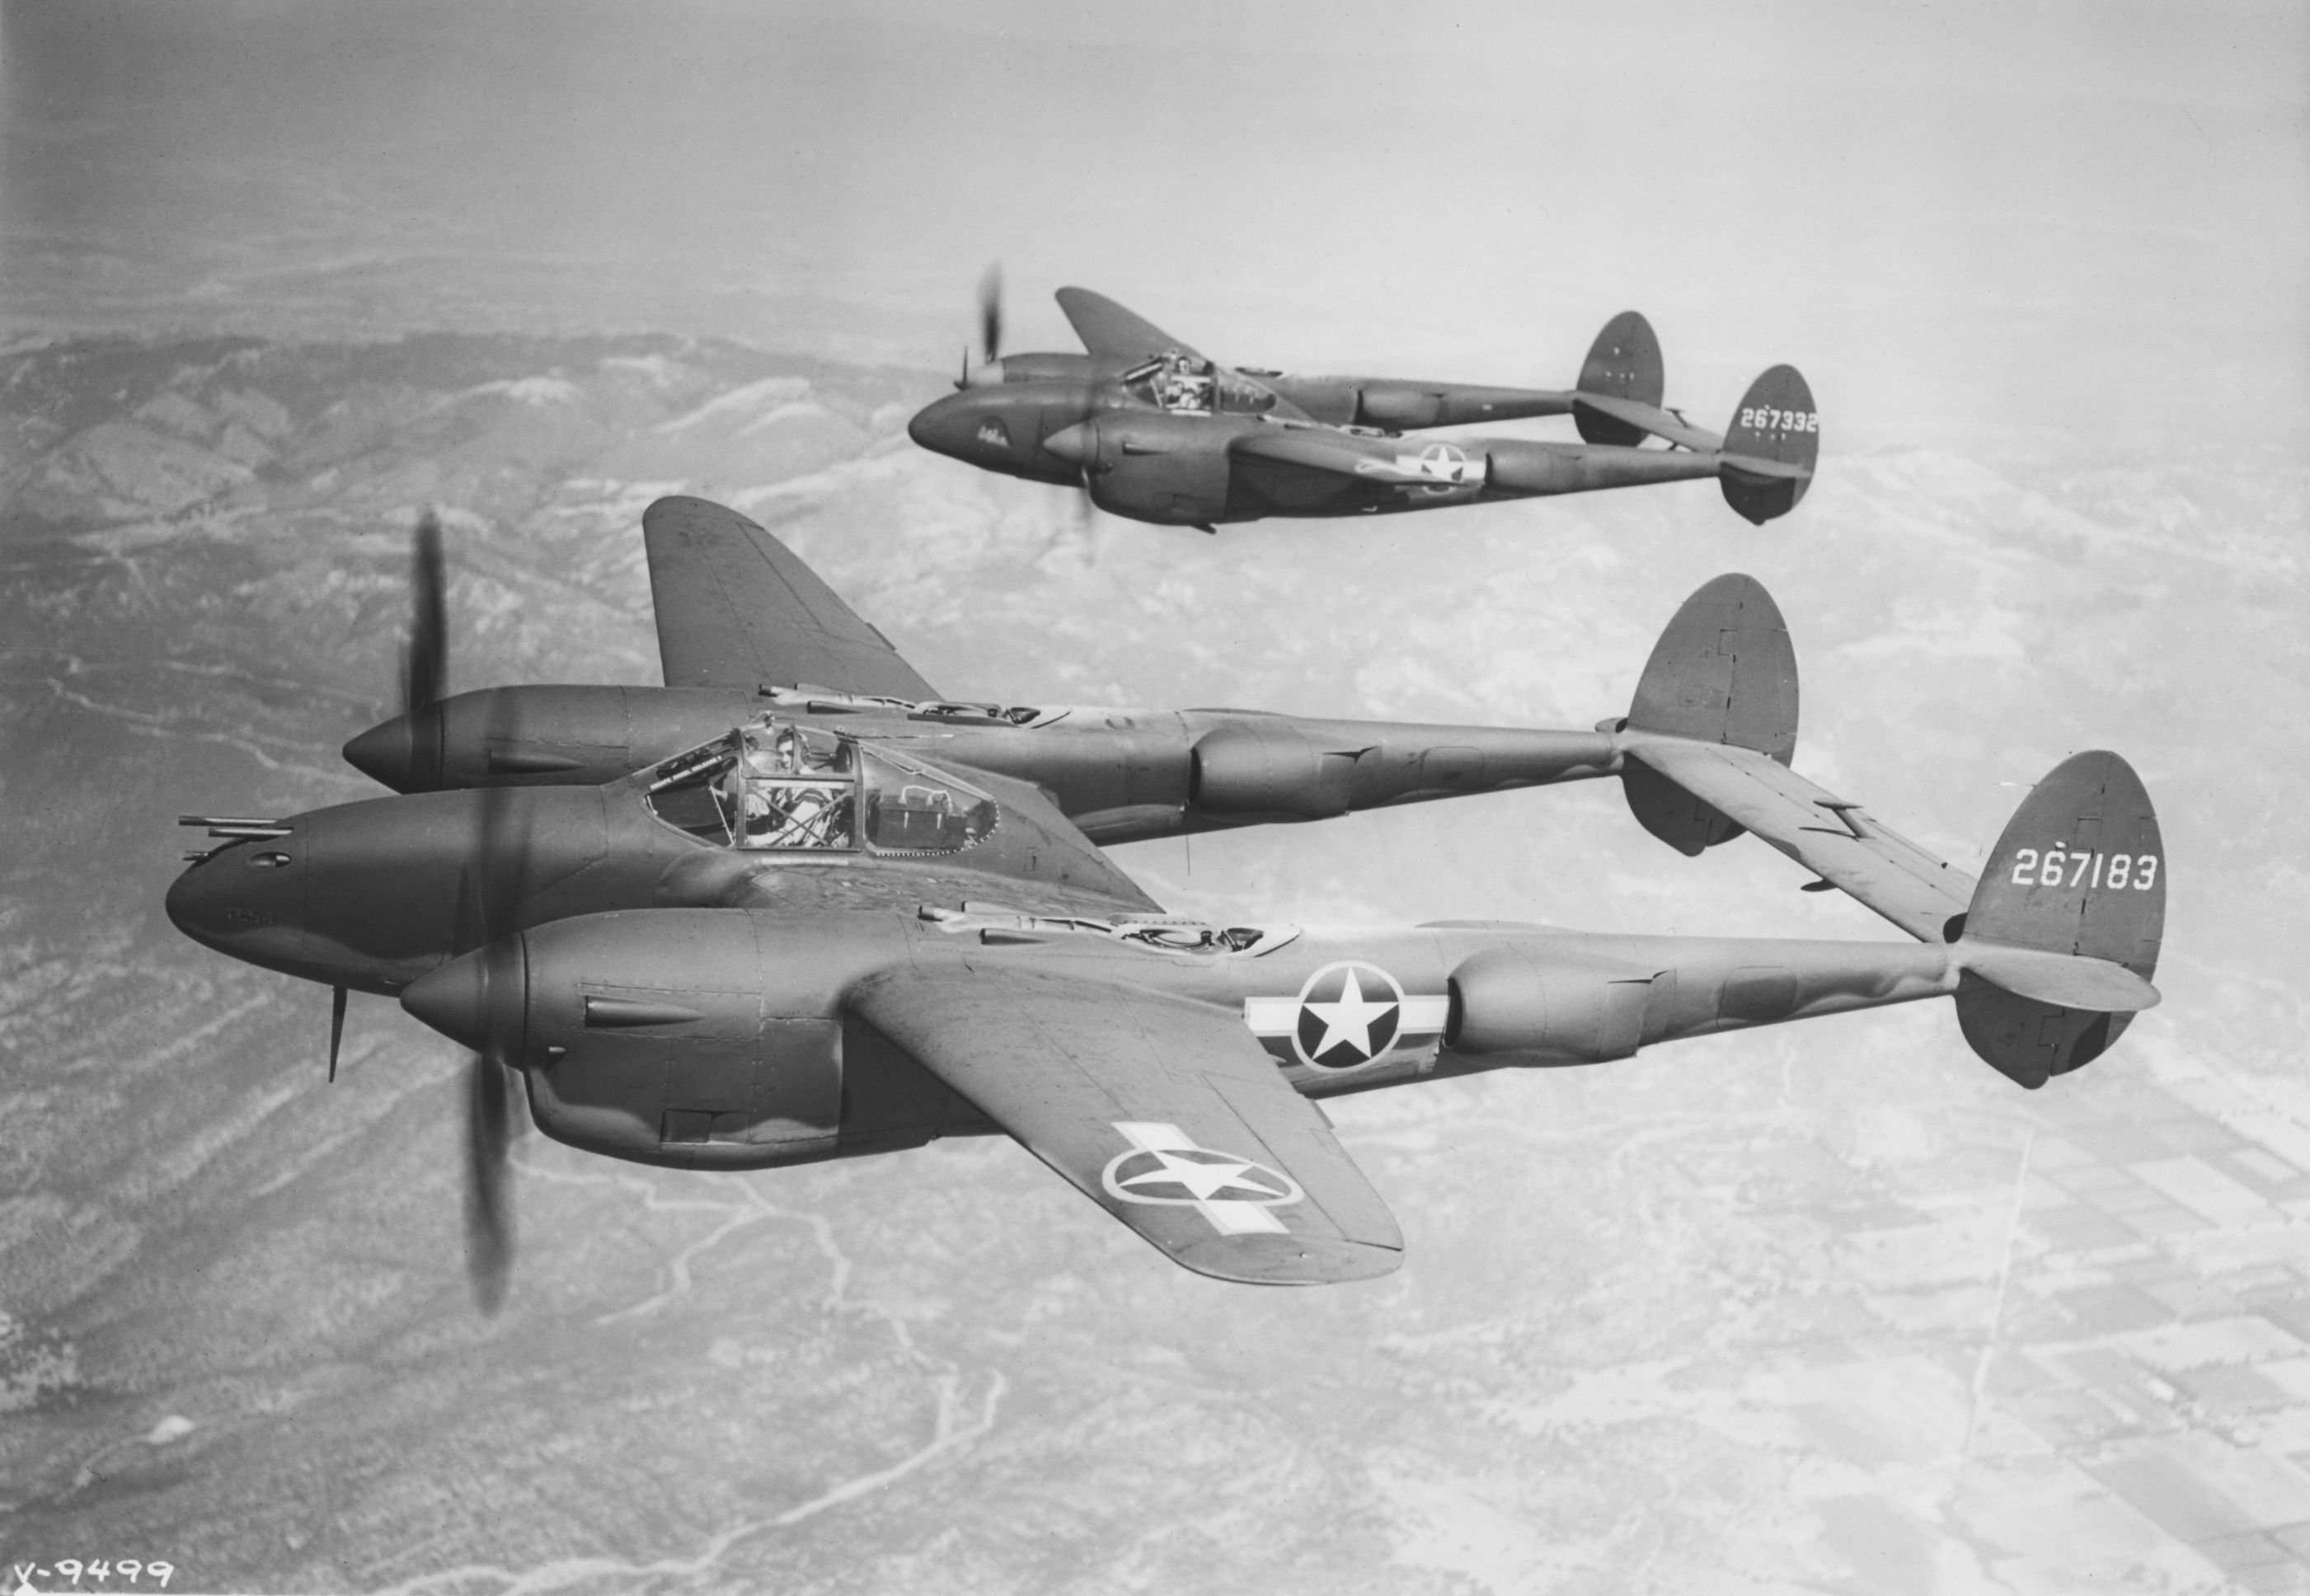 Советские истребители отечественной войны. П-38 Лайтнинг. P-38 Lightning. P38 второй мировой войны. Локхид p-38 «Лайтнинг» f-5b-1-lo.